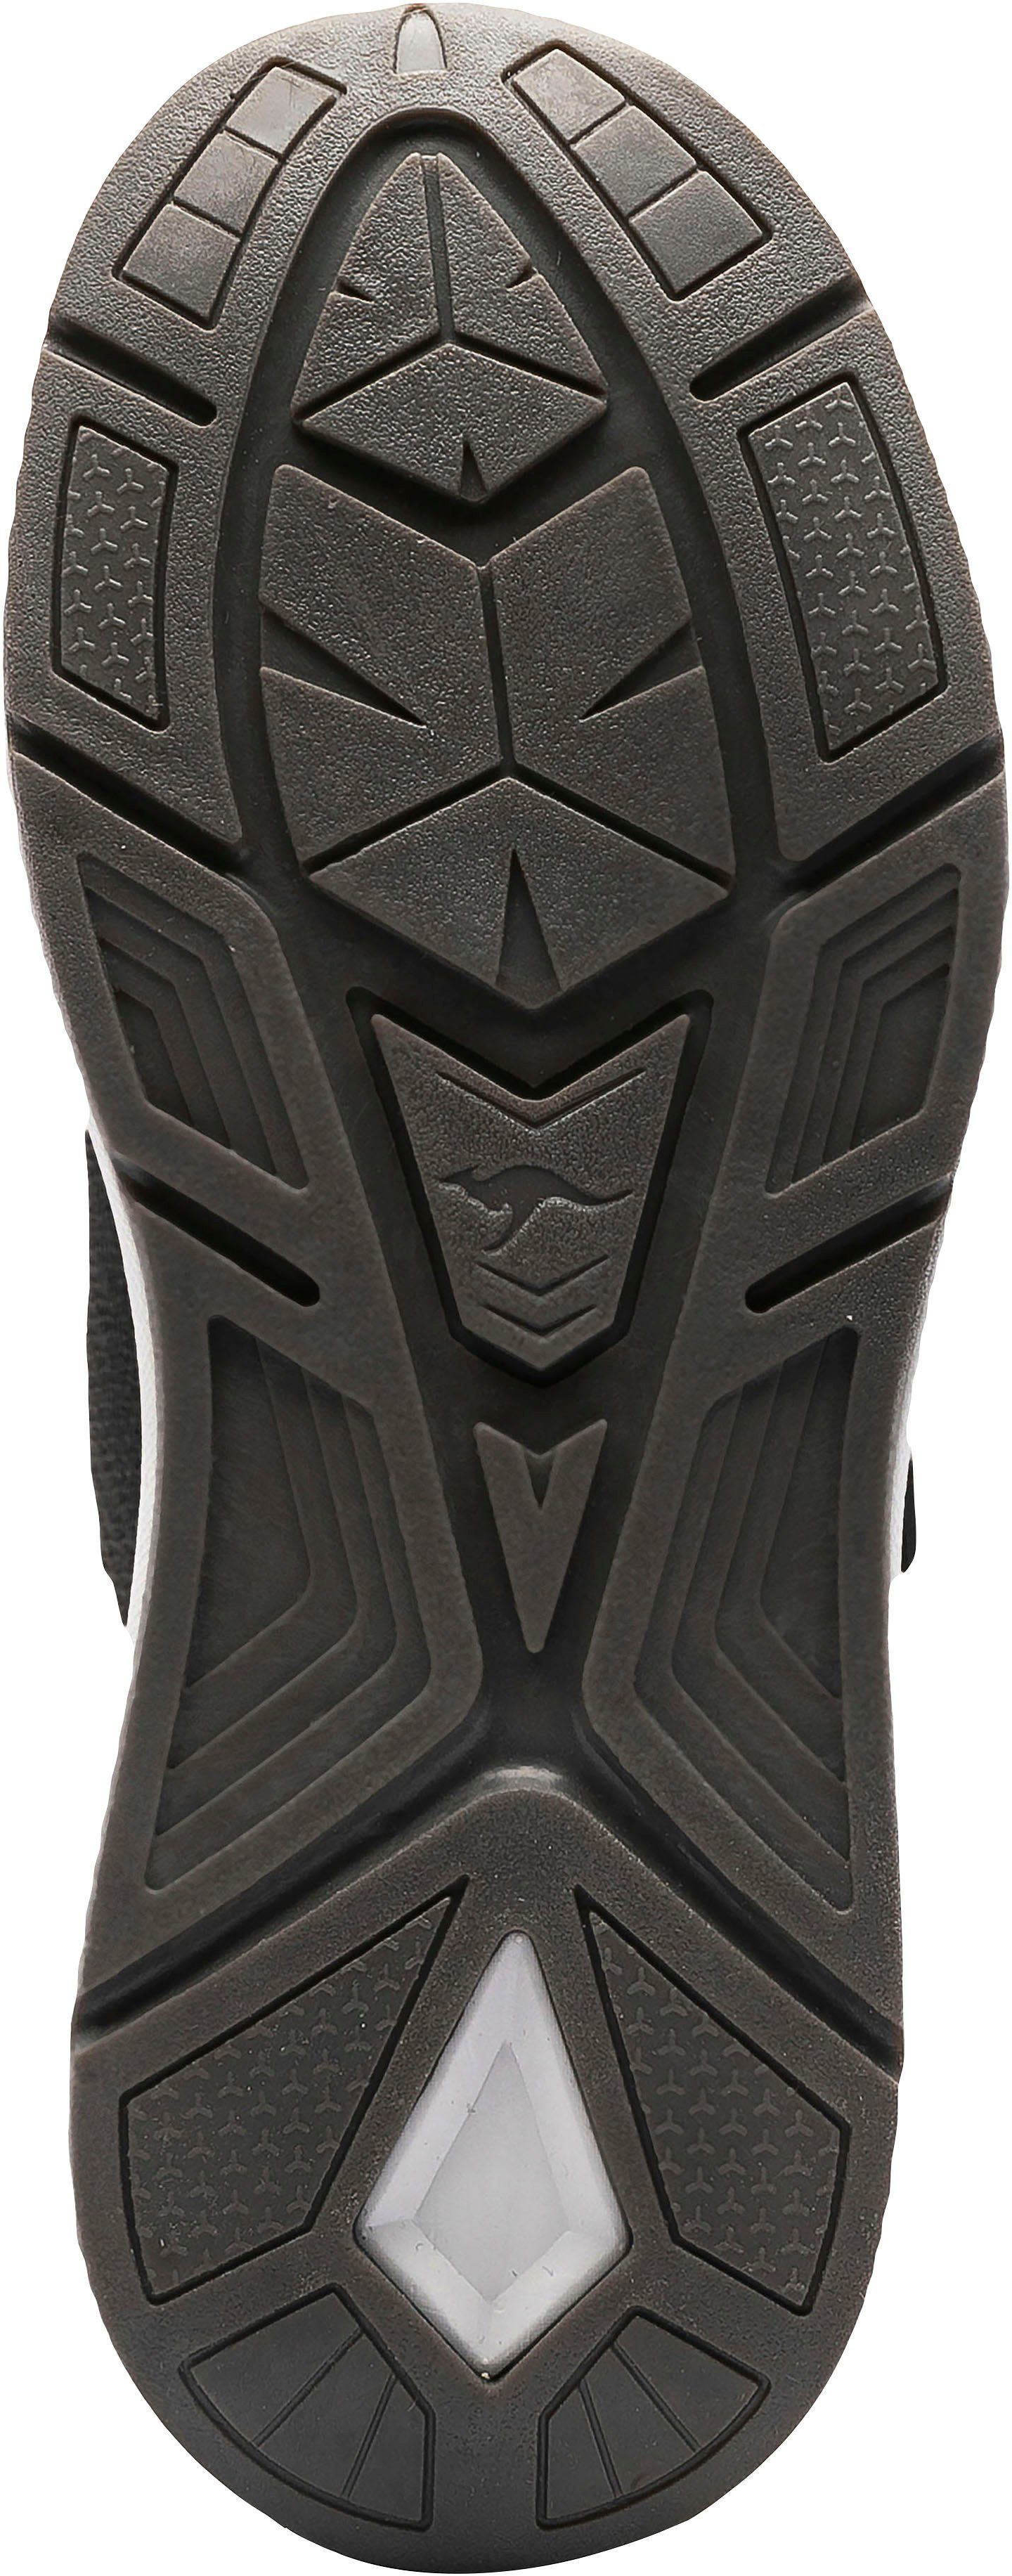 KangaROOS KD-Gym Klettverschluss Sneaker schwarz-gelb mit EV